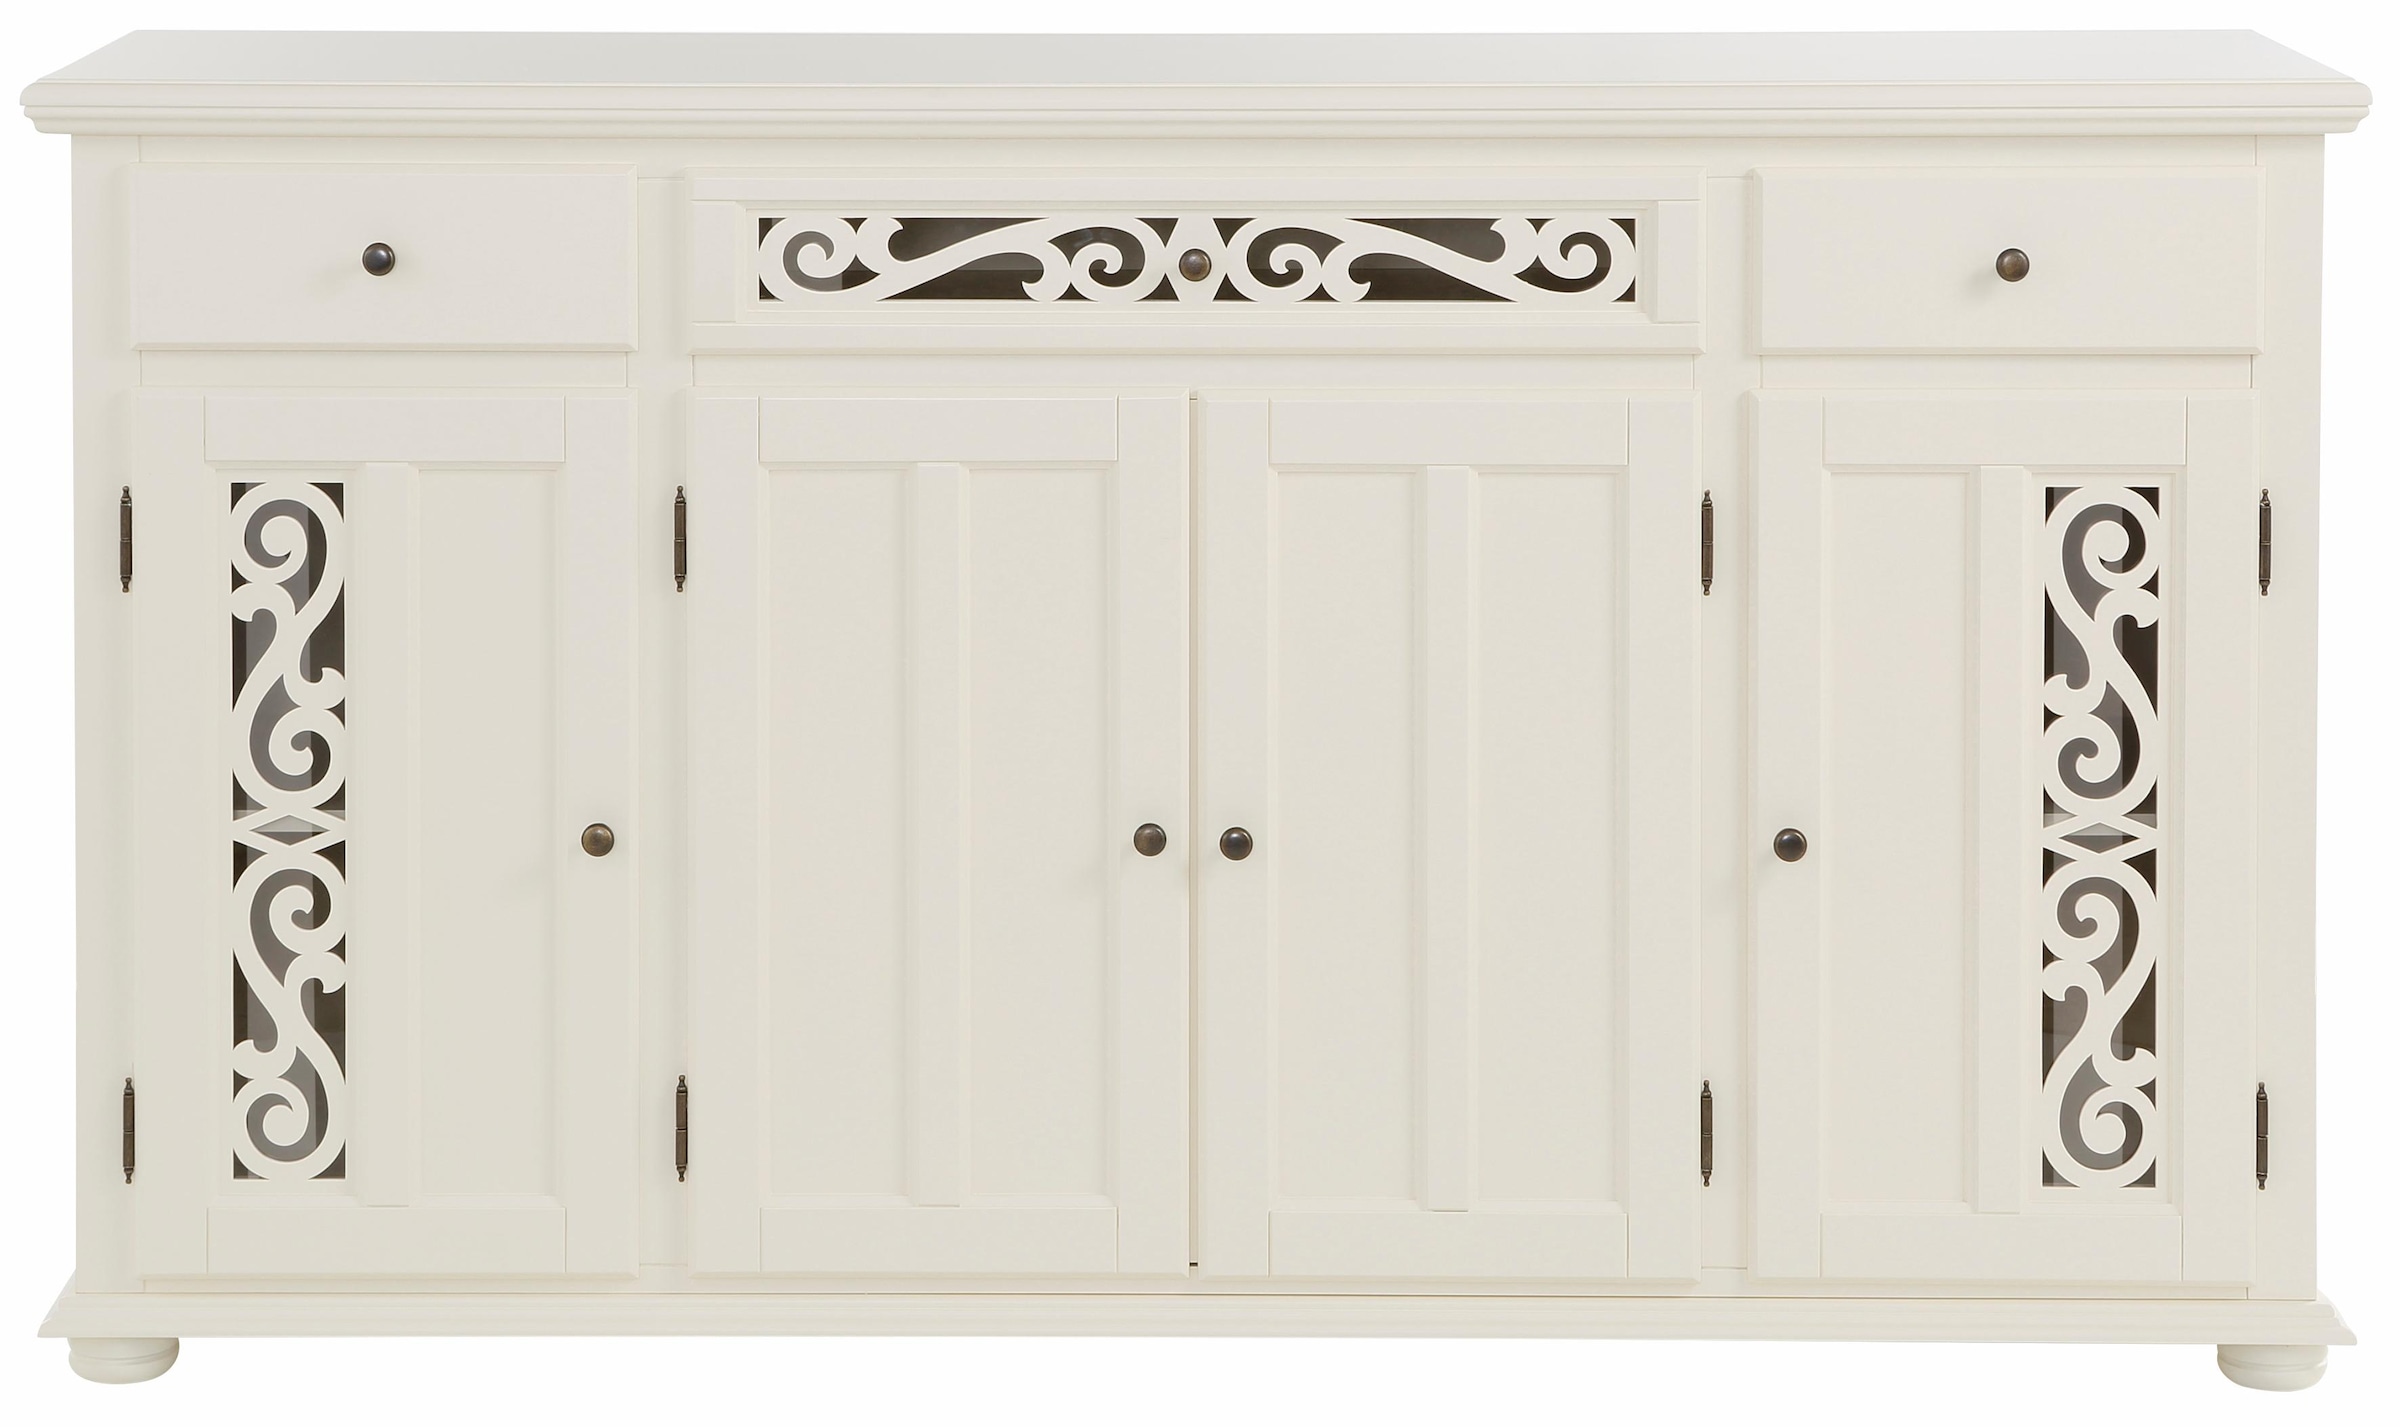 Home affaire Sideboard »Arabeske«, mit dekorativen Fräsungen auf Tür- und Schubladenfronten, Breite 171cm